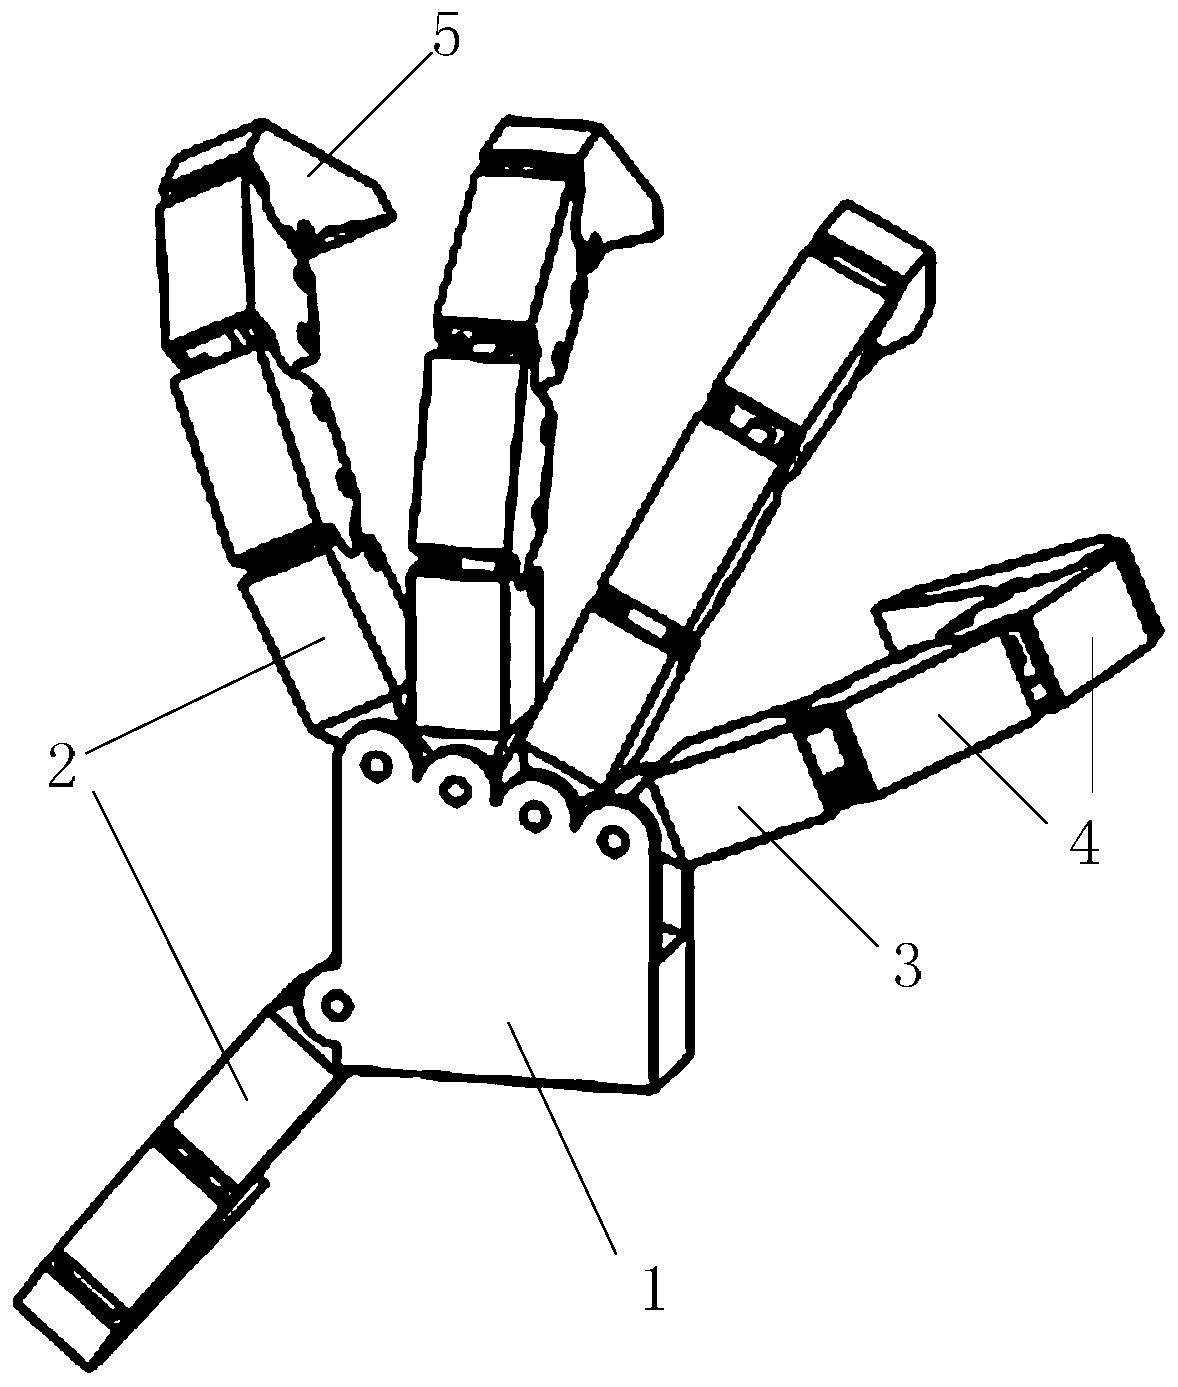 Flexible bionic manipulator